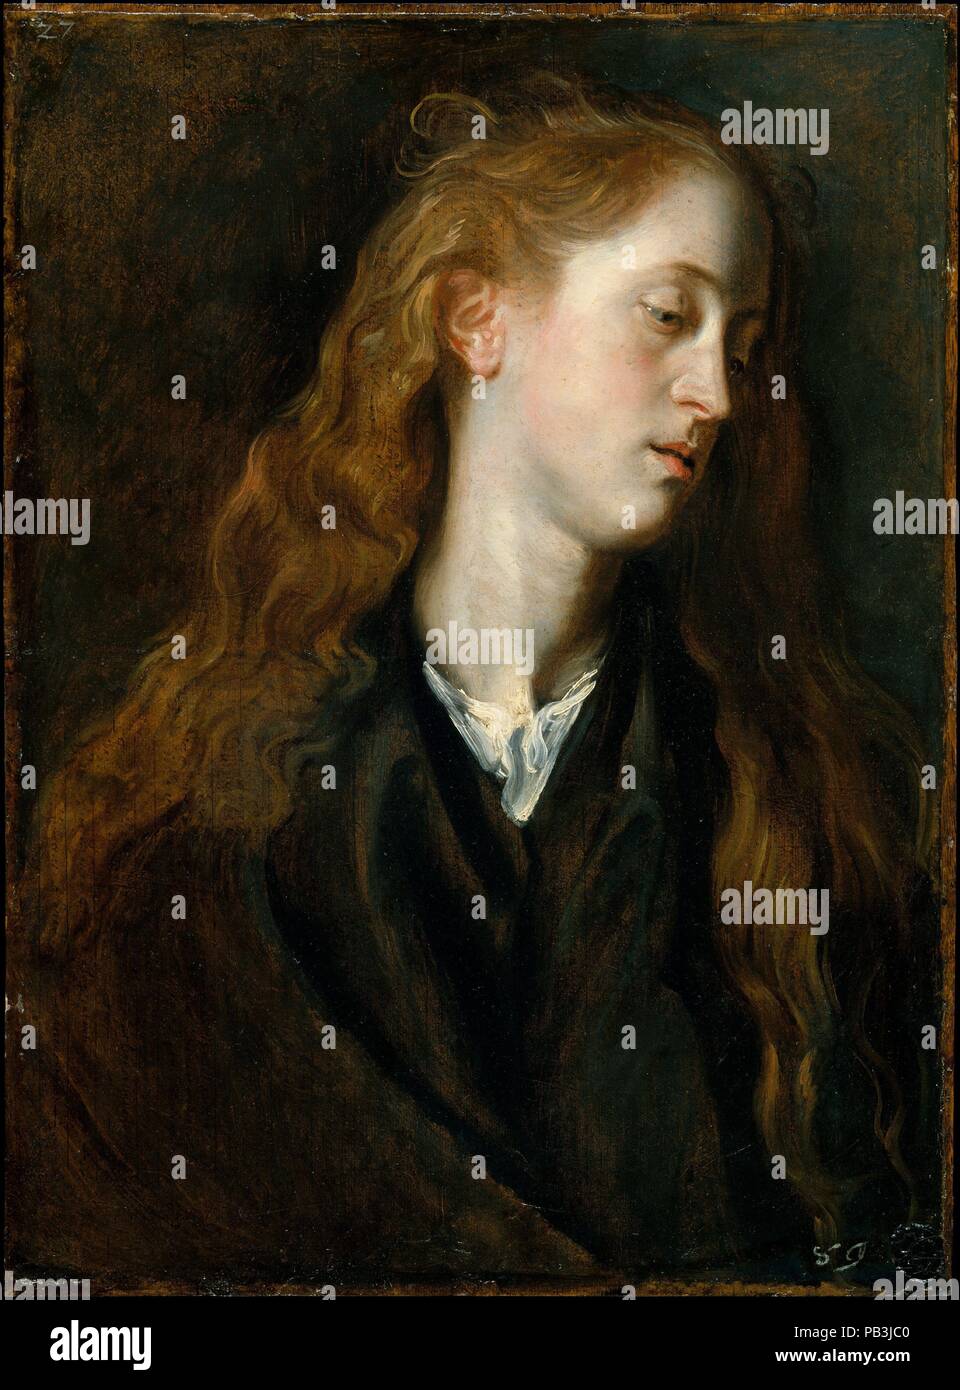 Studio Testa di una giovane donna. Artista: Anthony van Dyck (fiammingo, Anversa 1599-1641 Londra). Dimensioni: 22 1/4 x 16 3/8 in. (56,5 x 41,6 cm). Data: ca. 1618-20. Teste di studio di questo tipo sono stati dipinti da Van Dyck utilizzando modelli vivi, le cui caratteristiche sono state poi ripetute in immagini finito, di solito su temi religiosi. Infatti la presente figura è servita come prototipo per una somiglianza con la Vergine in una raffigurazione della Santa Famiglia. L'iconografia della malinconia giovane donna con capelli lunghi in streaming le sue spalle anche adatto a immagini di Maria Maddalena; curiosamente, un primo biografo narra Foto Stock